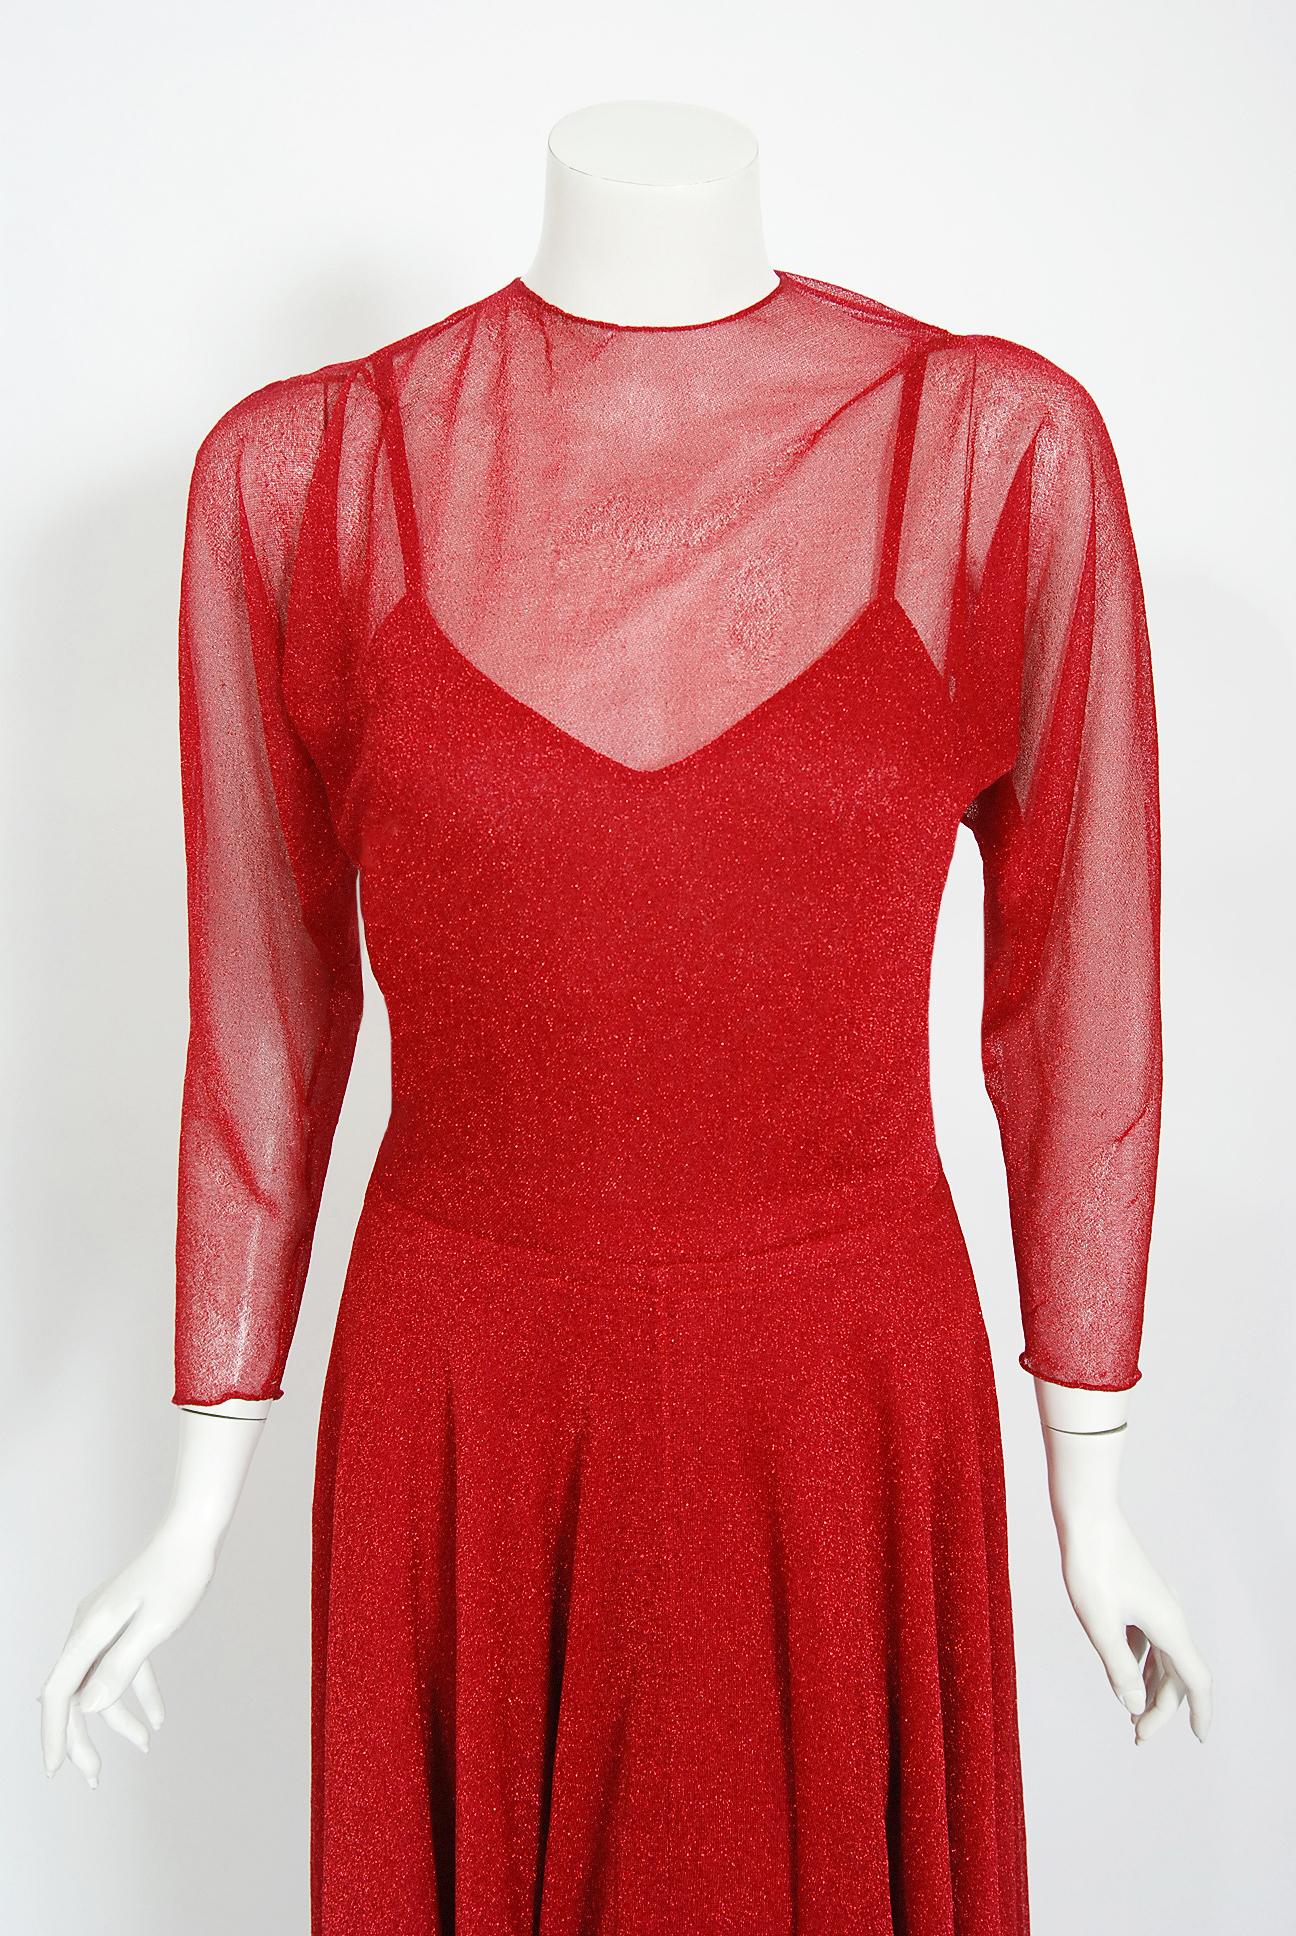 Magnifique ensemble de robe en tricot lurex métallique Halston Couture datant du milieu des années 1970. Pendant la majeure partie des années 70, il a incarné le glamour et la décadence de cette époque, devenant une figure centrale de la vie